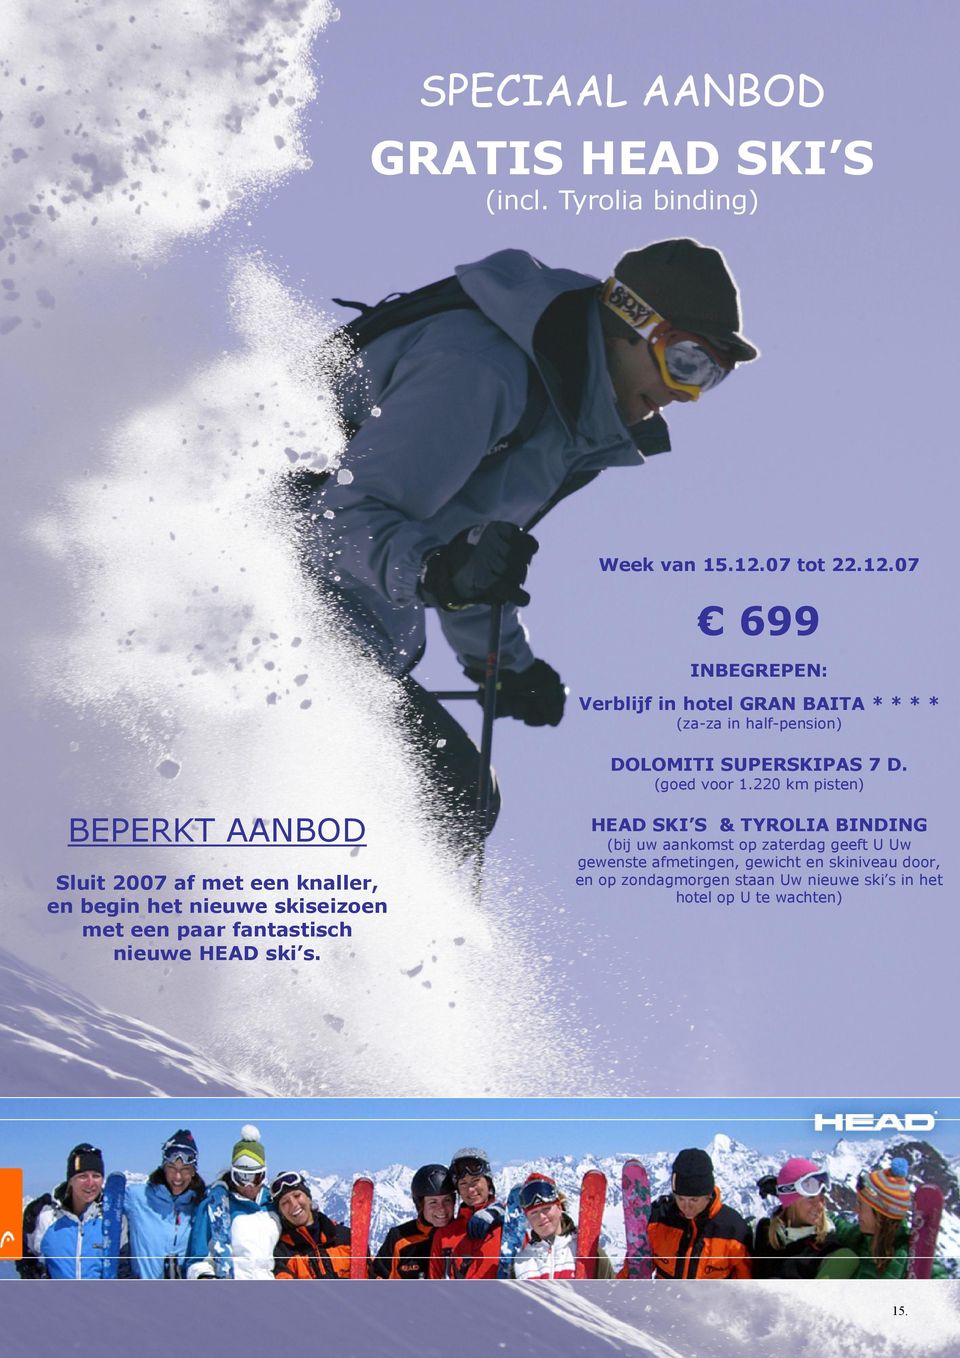 220 km pisten) BEPERKT AANBOD Sluit 2007 af met een knaller, en begin het nieuwe skiseizoen met een paar fantastisch nieuwe HEAD ski